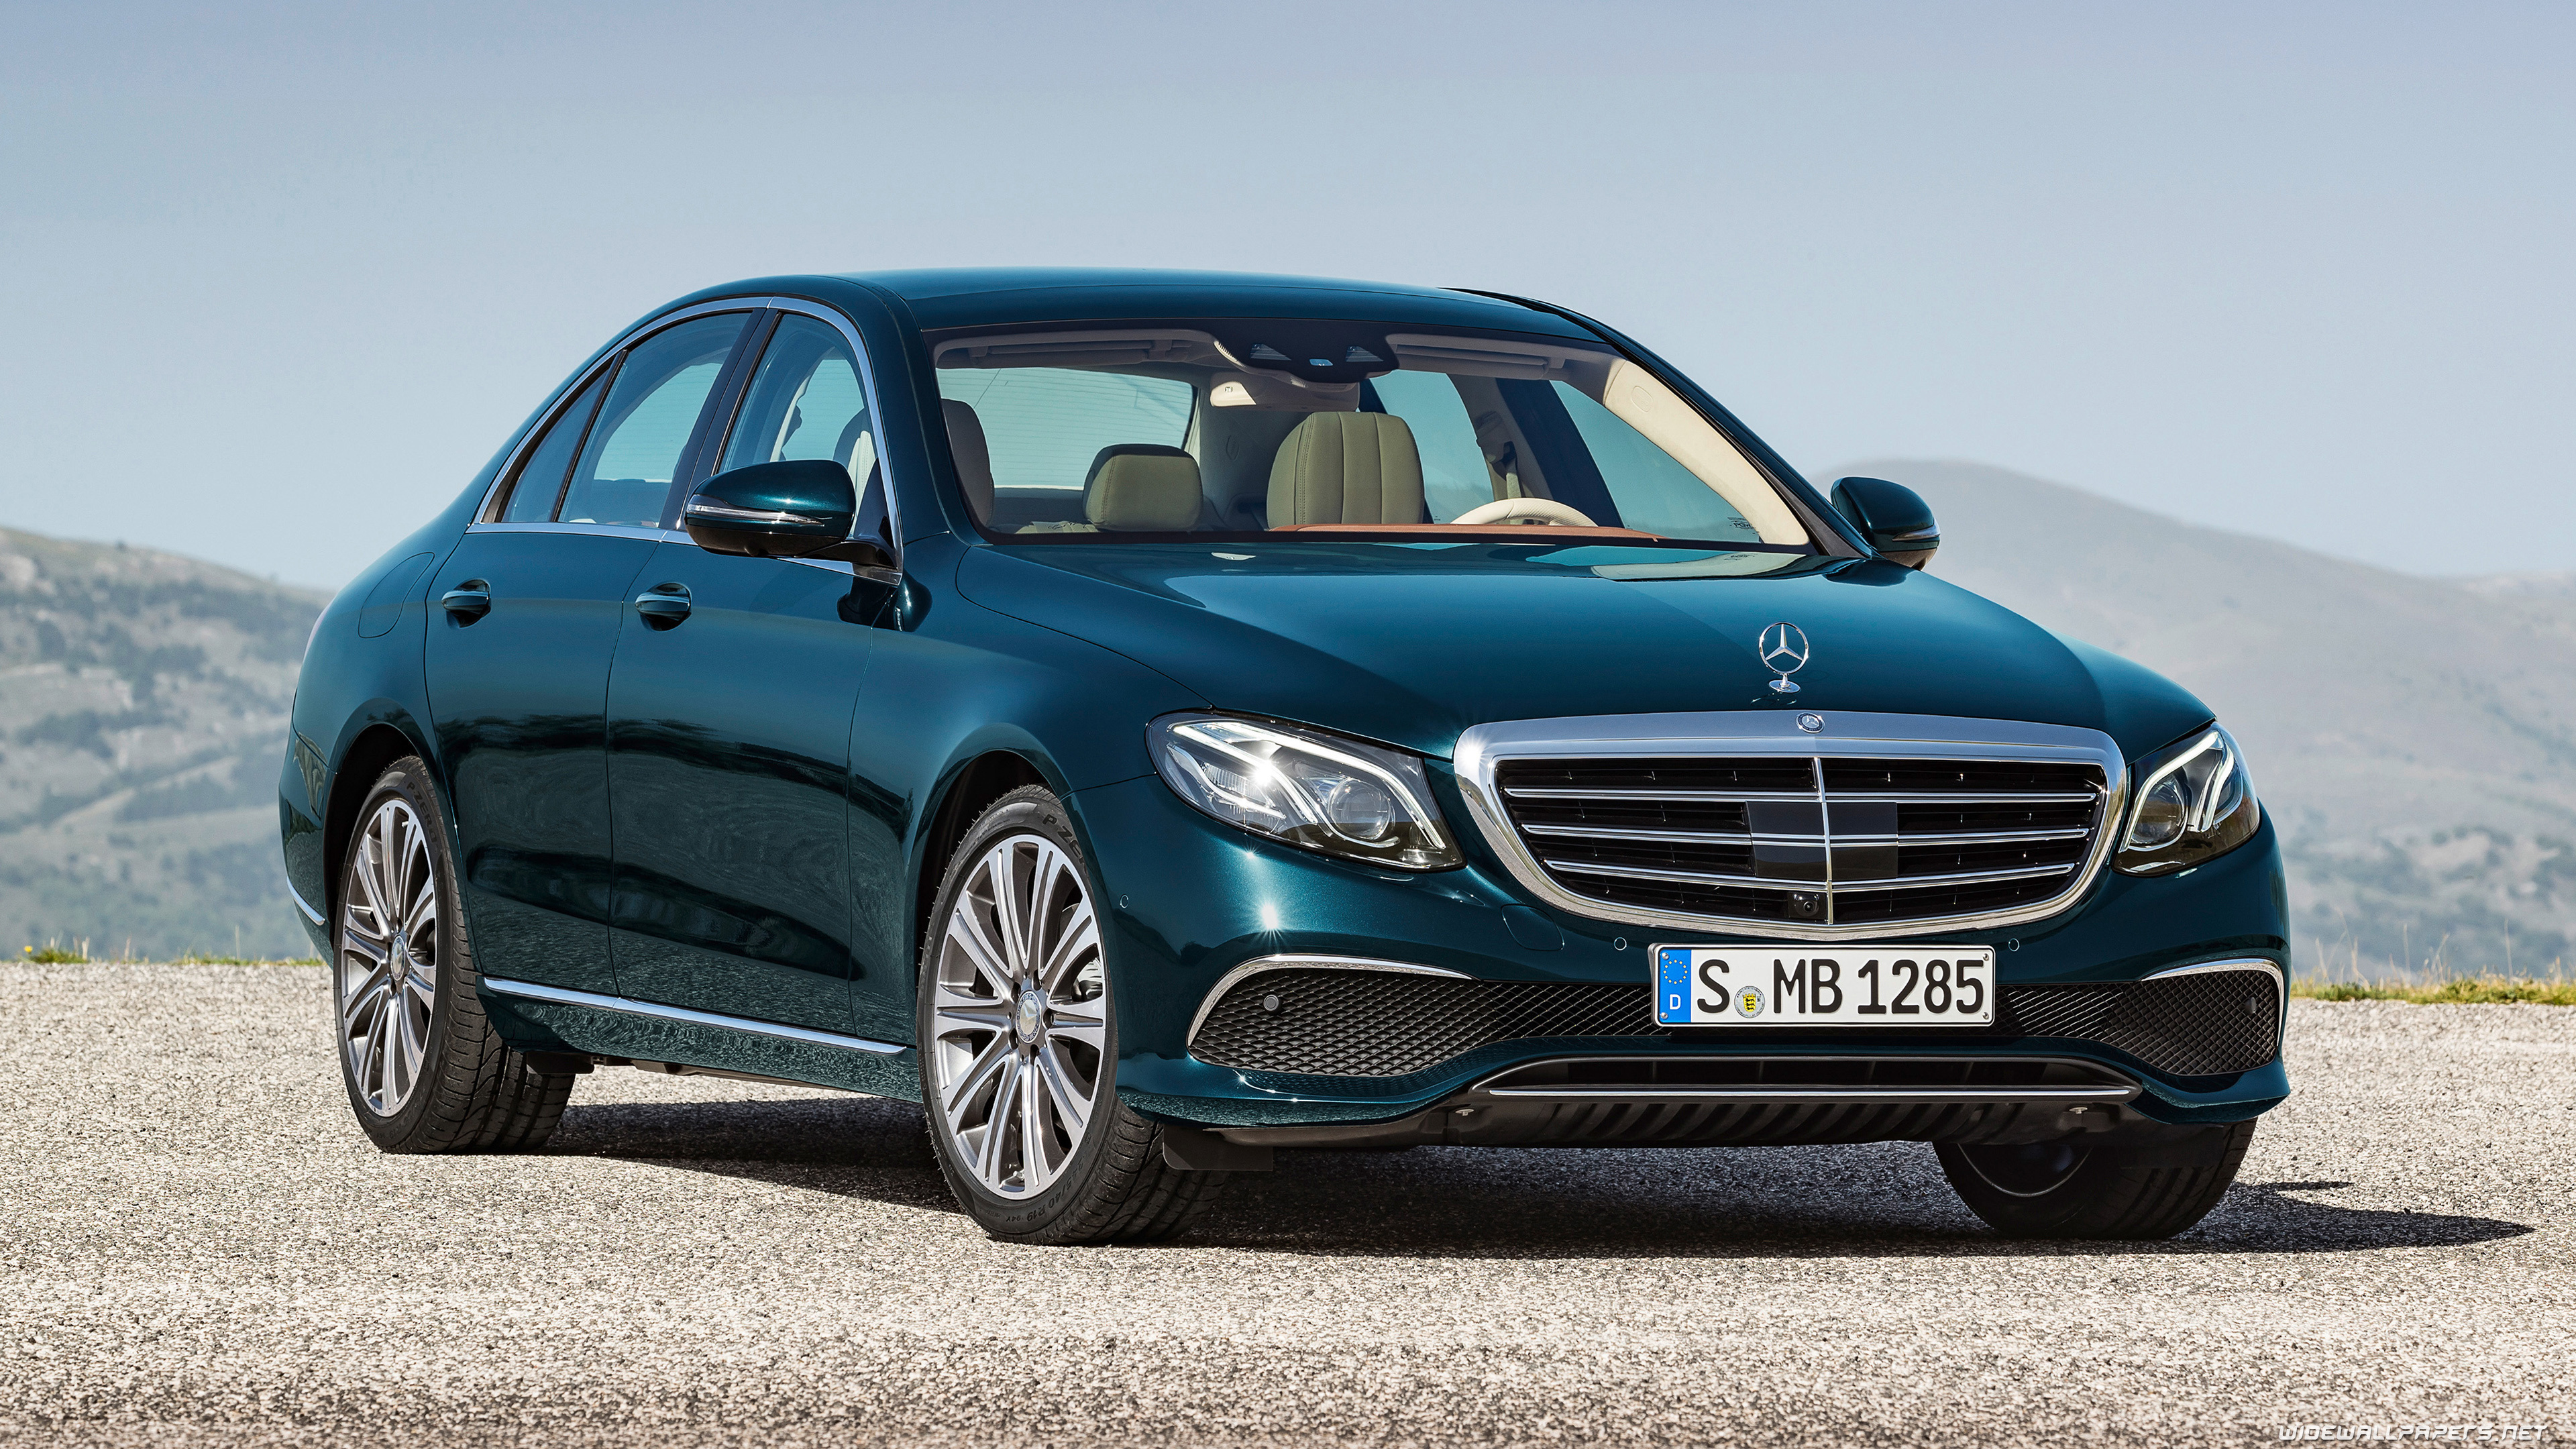 Mercedes-Benz E-Class, Luxury cars, Desktop wallpapers, Ultra HD, 3840x2160 4K Desktop